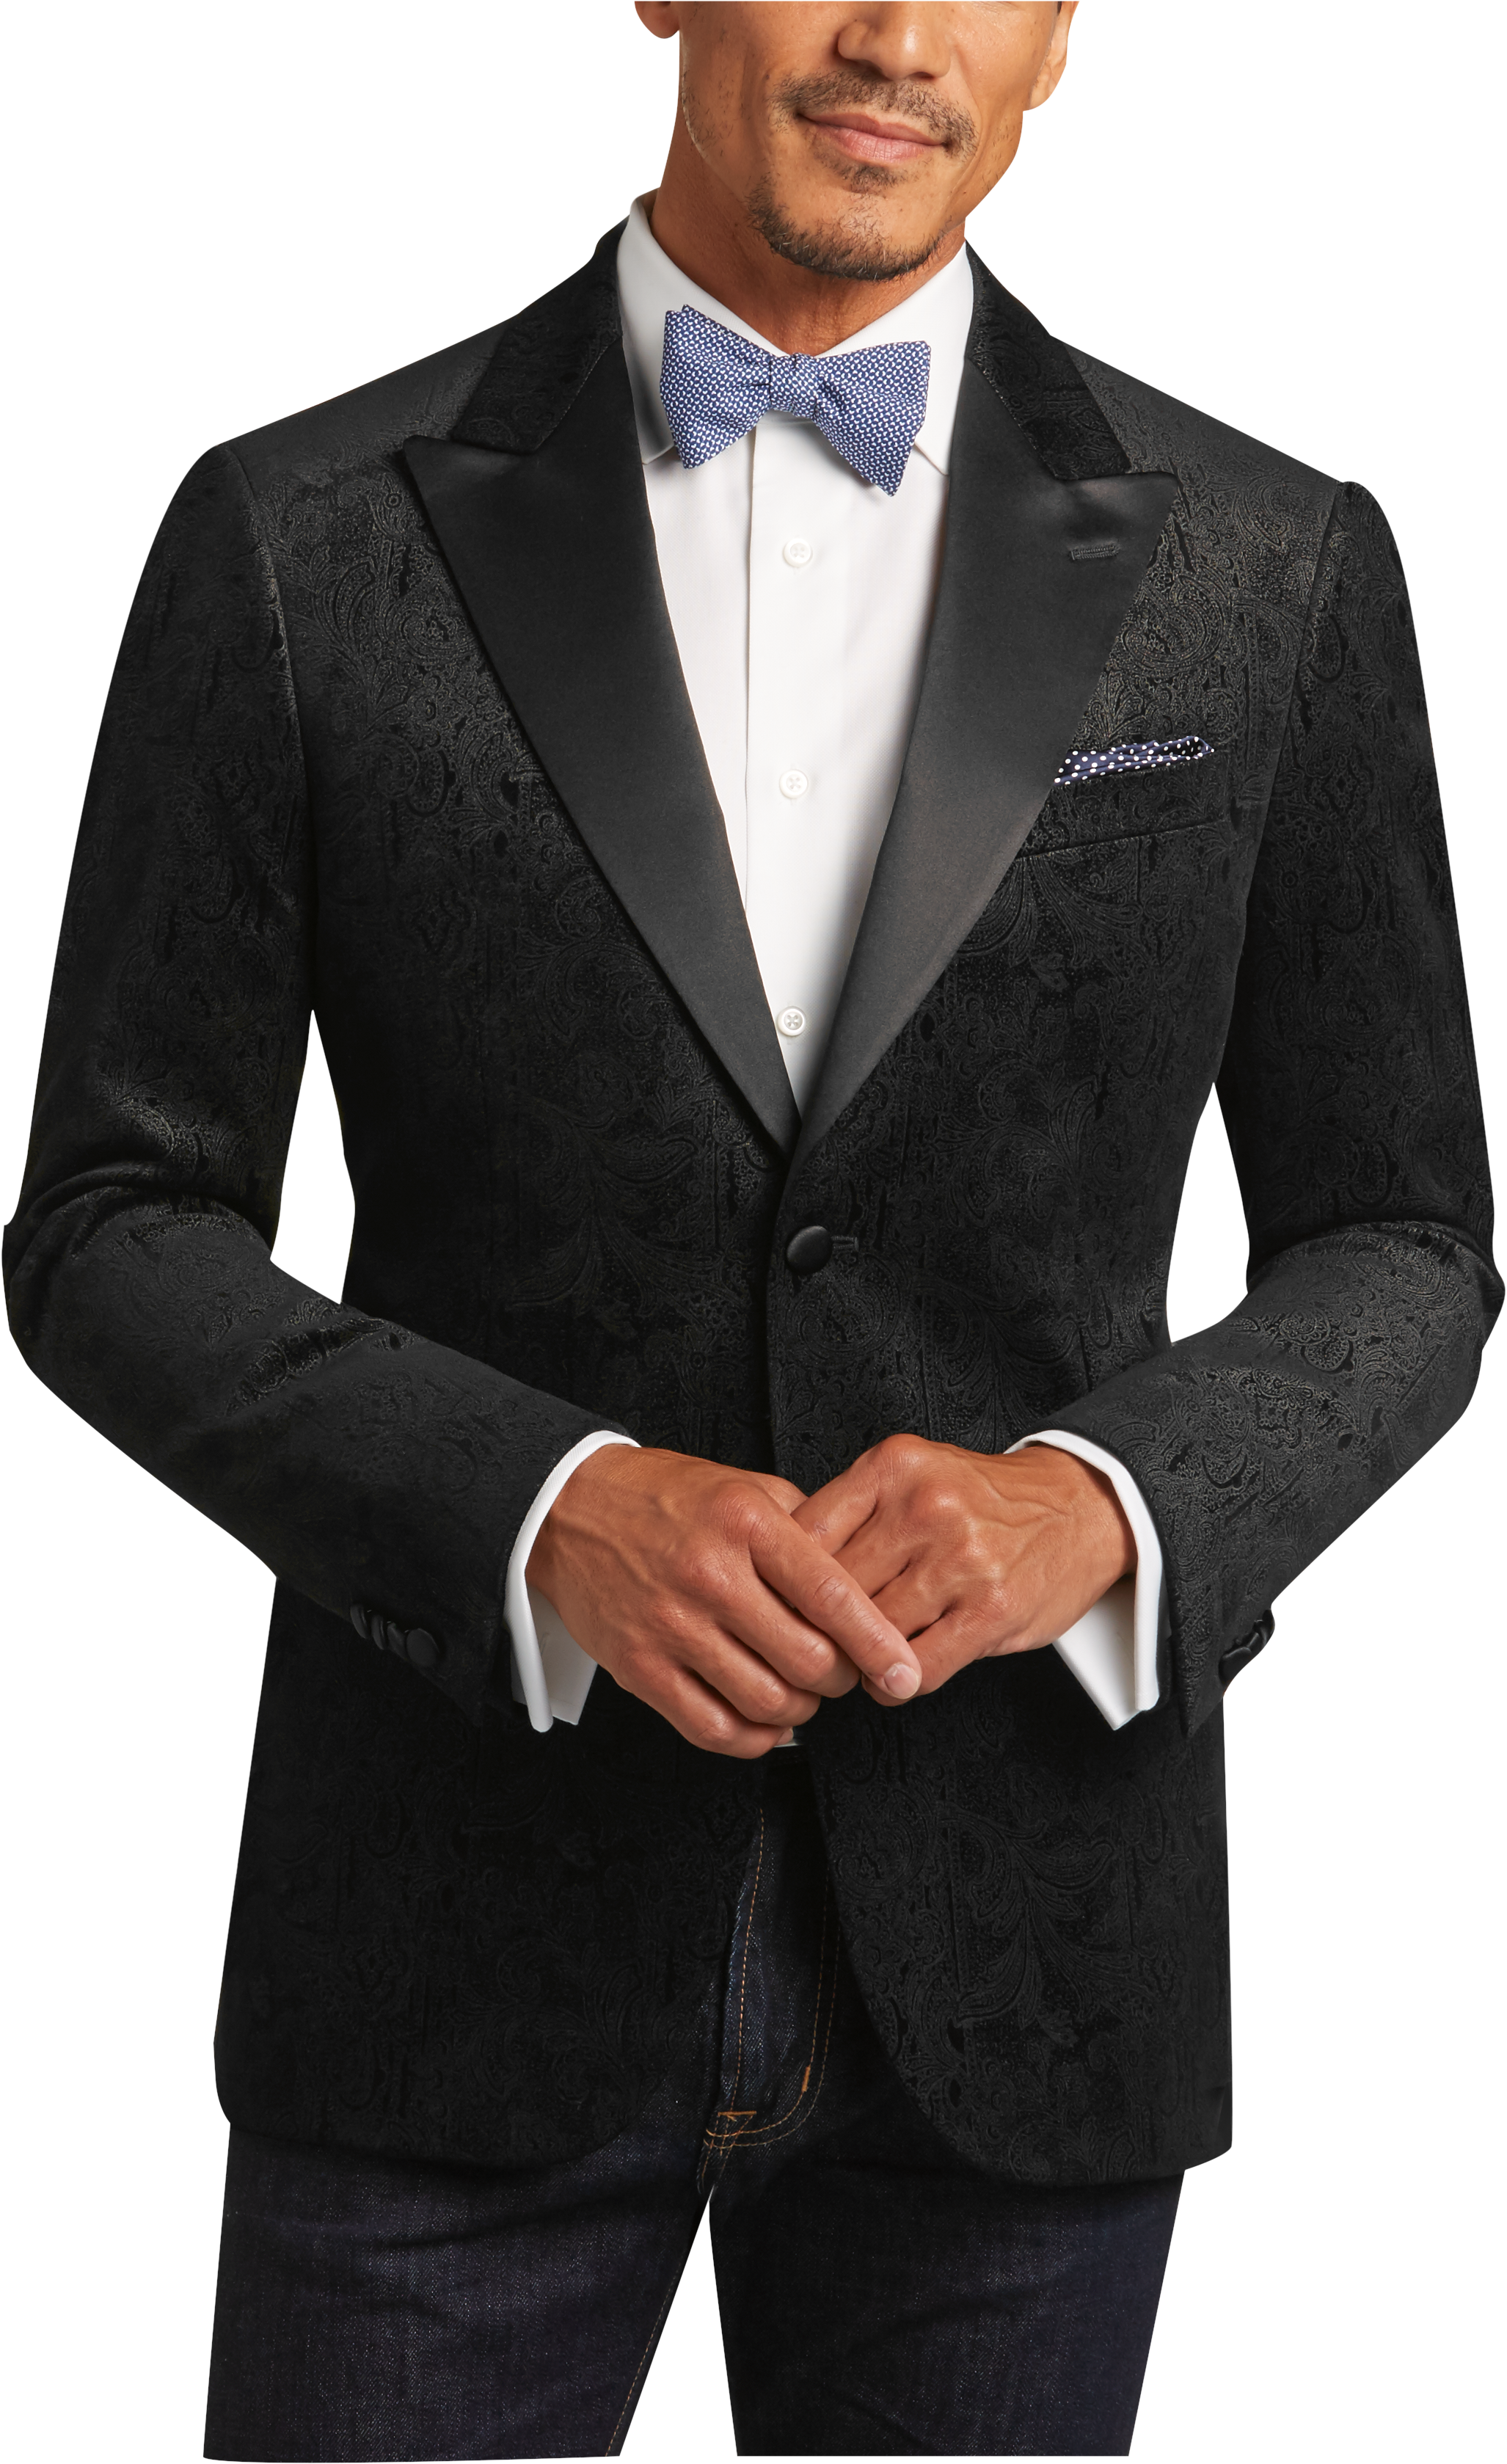 Joseph Abboud Black Paisley Slim Fit Sport Jacket - Men's Tuxedos | Men ...